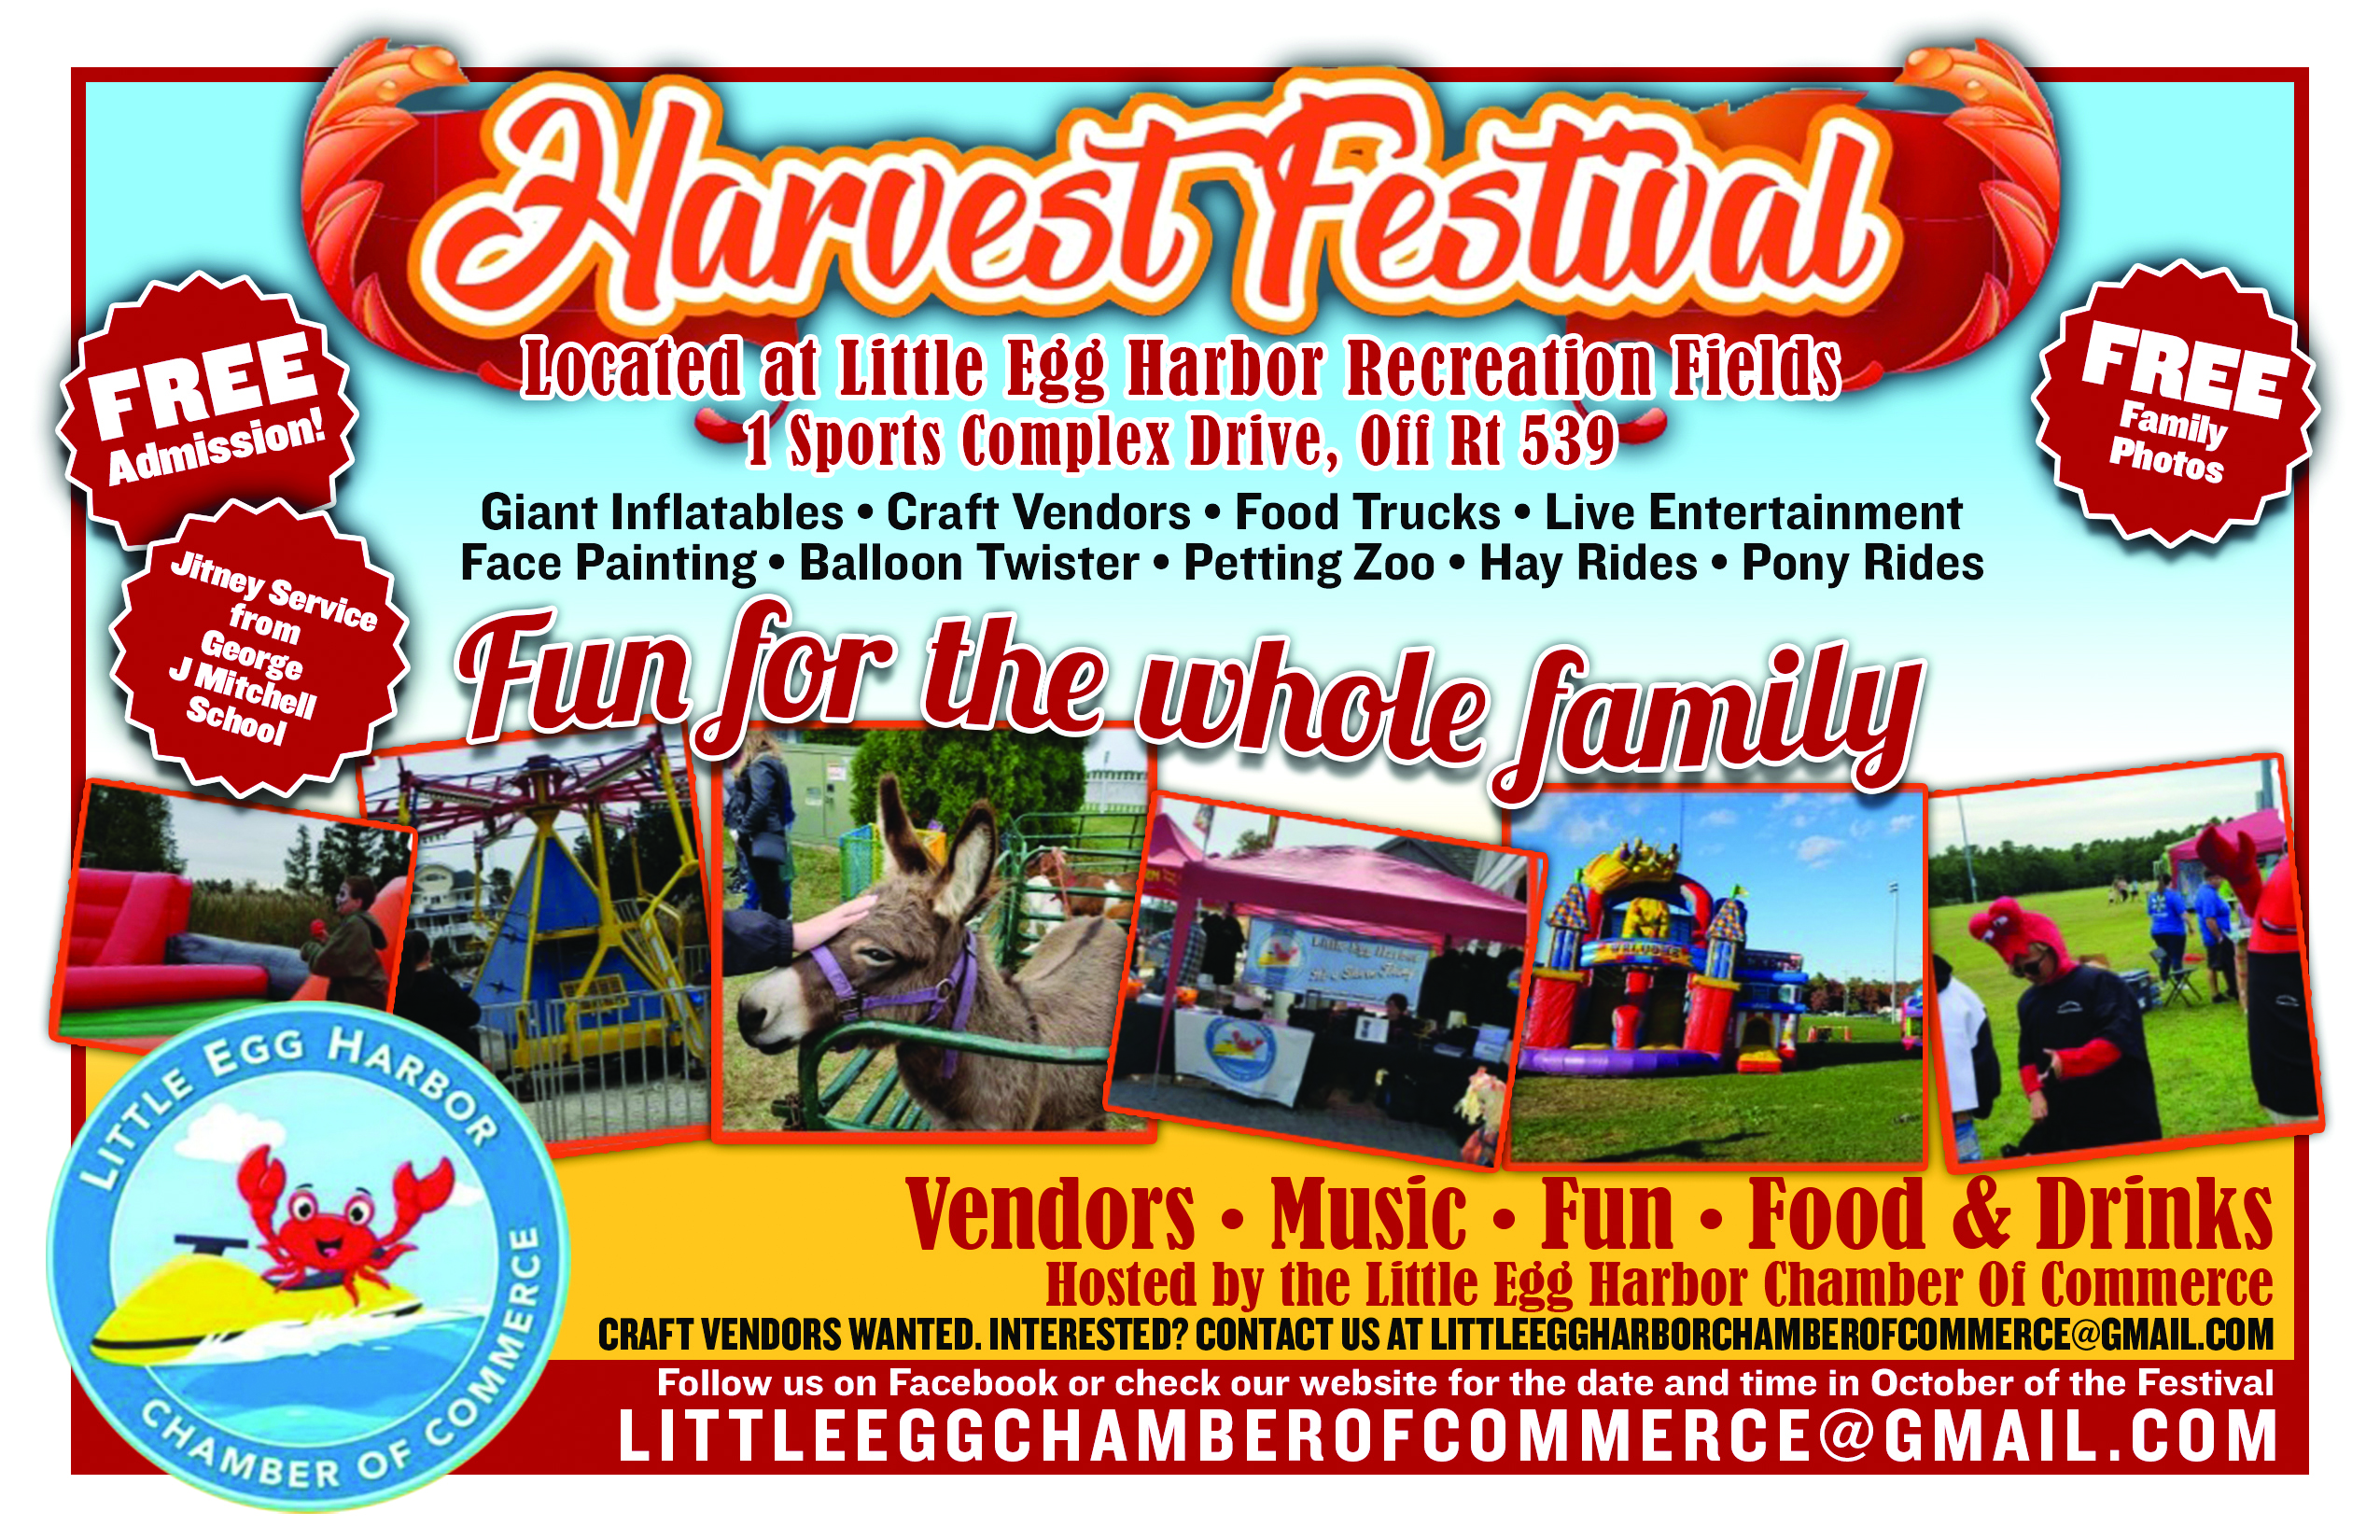 4th Annual Harvest Festival - Egg Harbor Chamber of Commerce